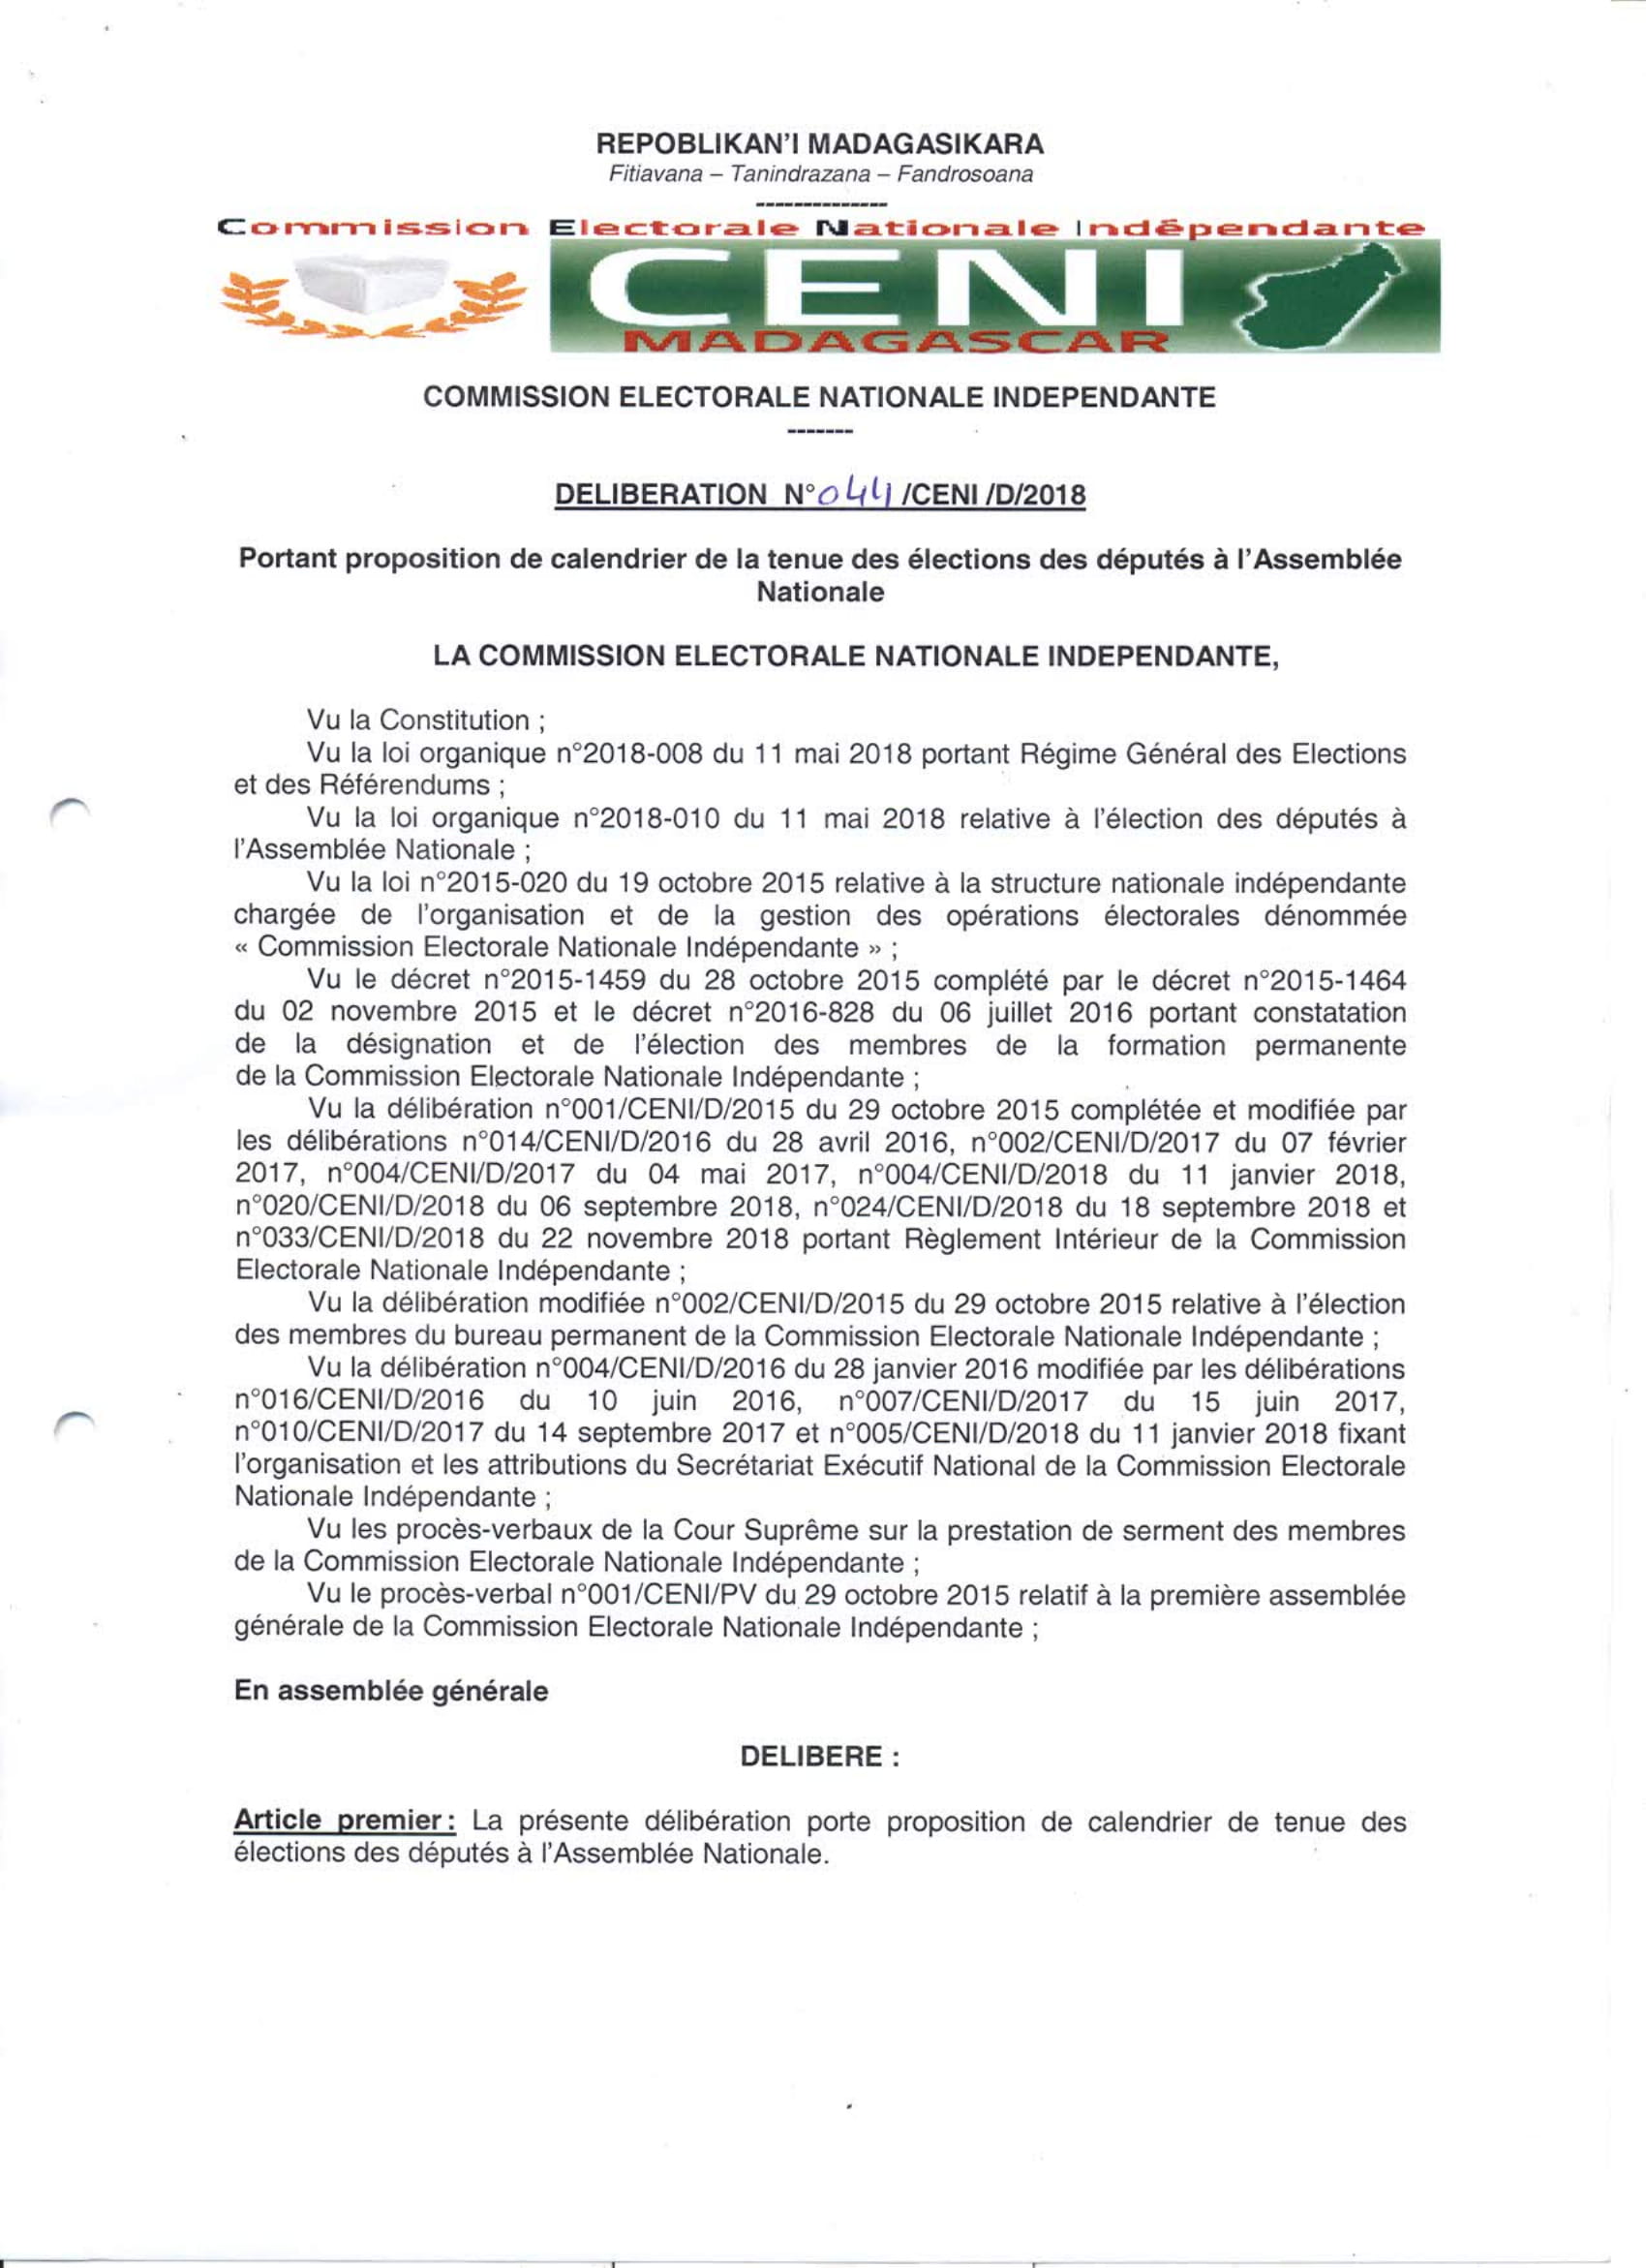 Proposition de calendrier de la tenue des élections des députés à l’Assemblée Nationale